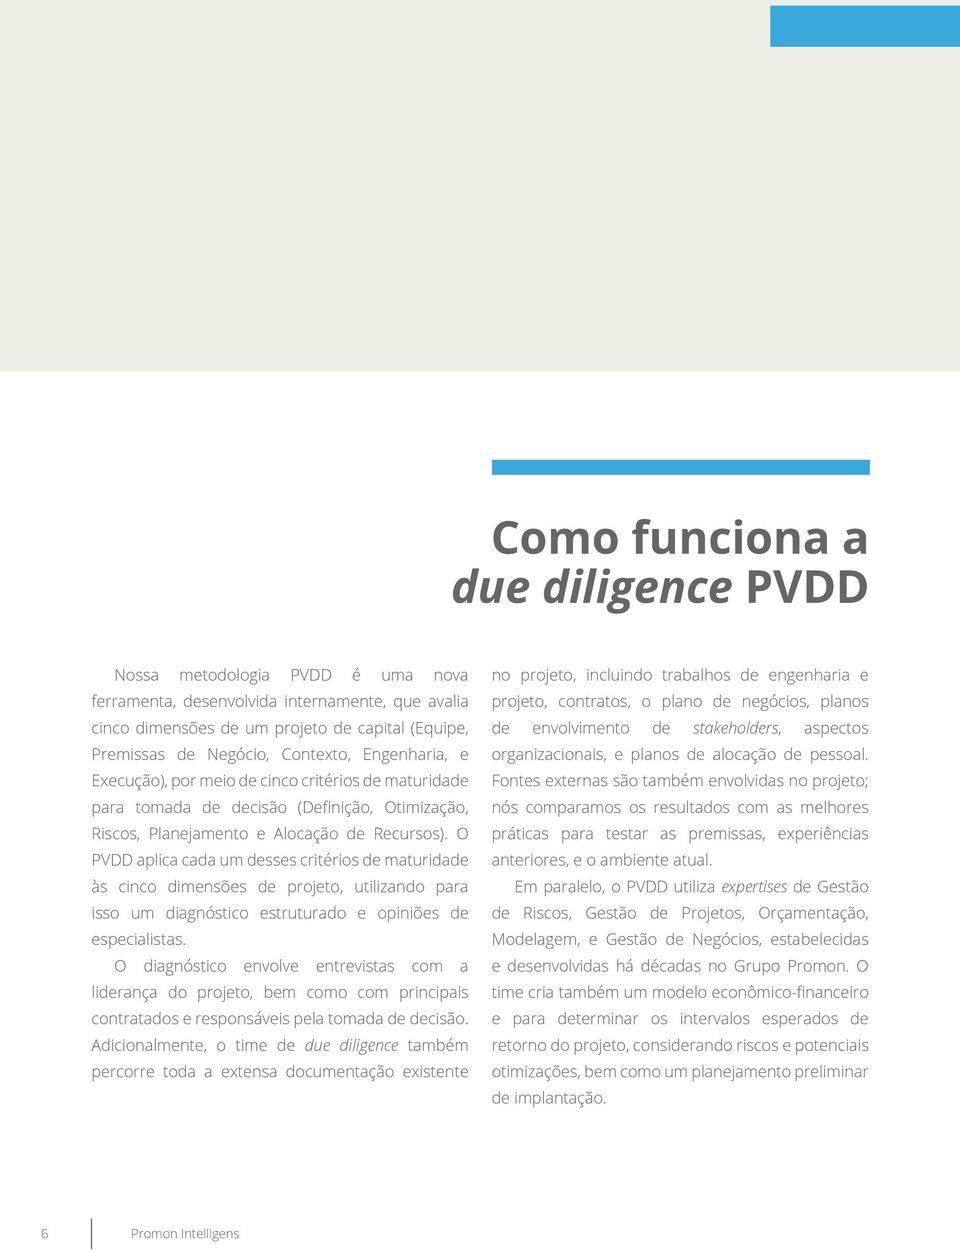 O PVDD aplica cada um desses critérios de maturidade às cinco dimensões de projeto, utilizando para isso um diagnóstico estruturado e opiniões de especialistas.